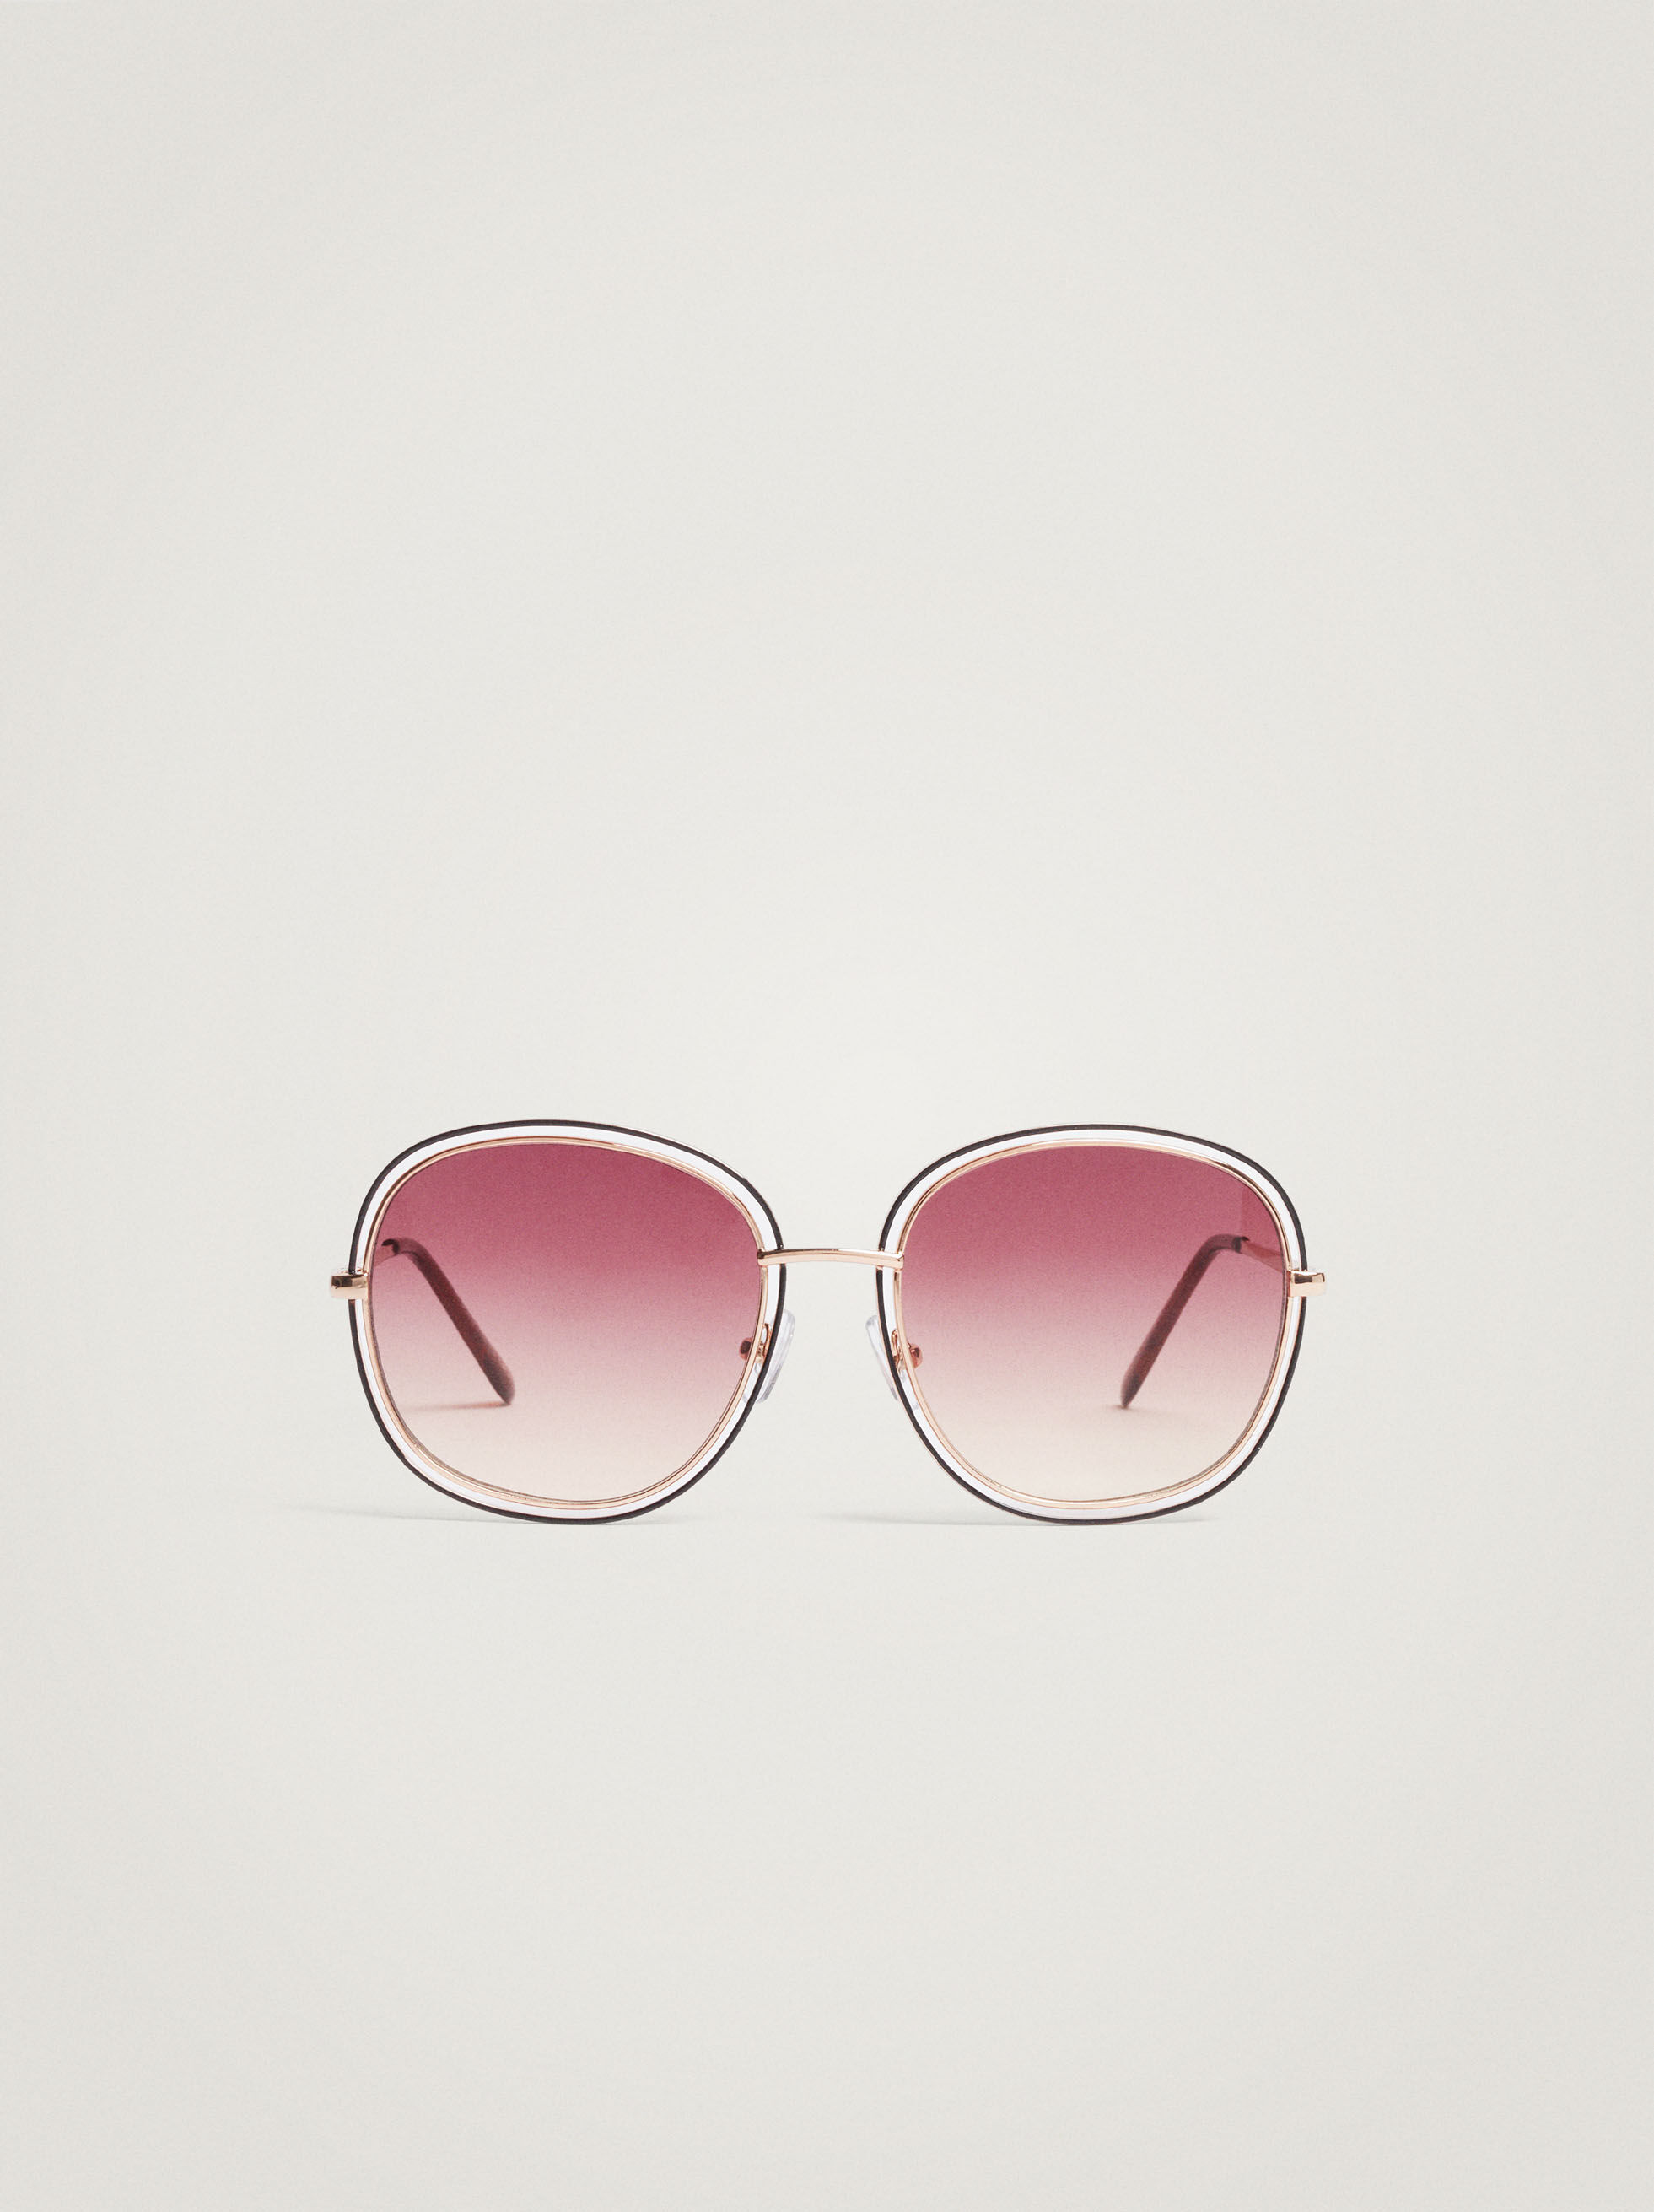 app for glasses frames